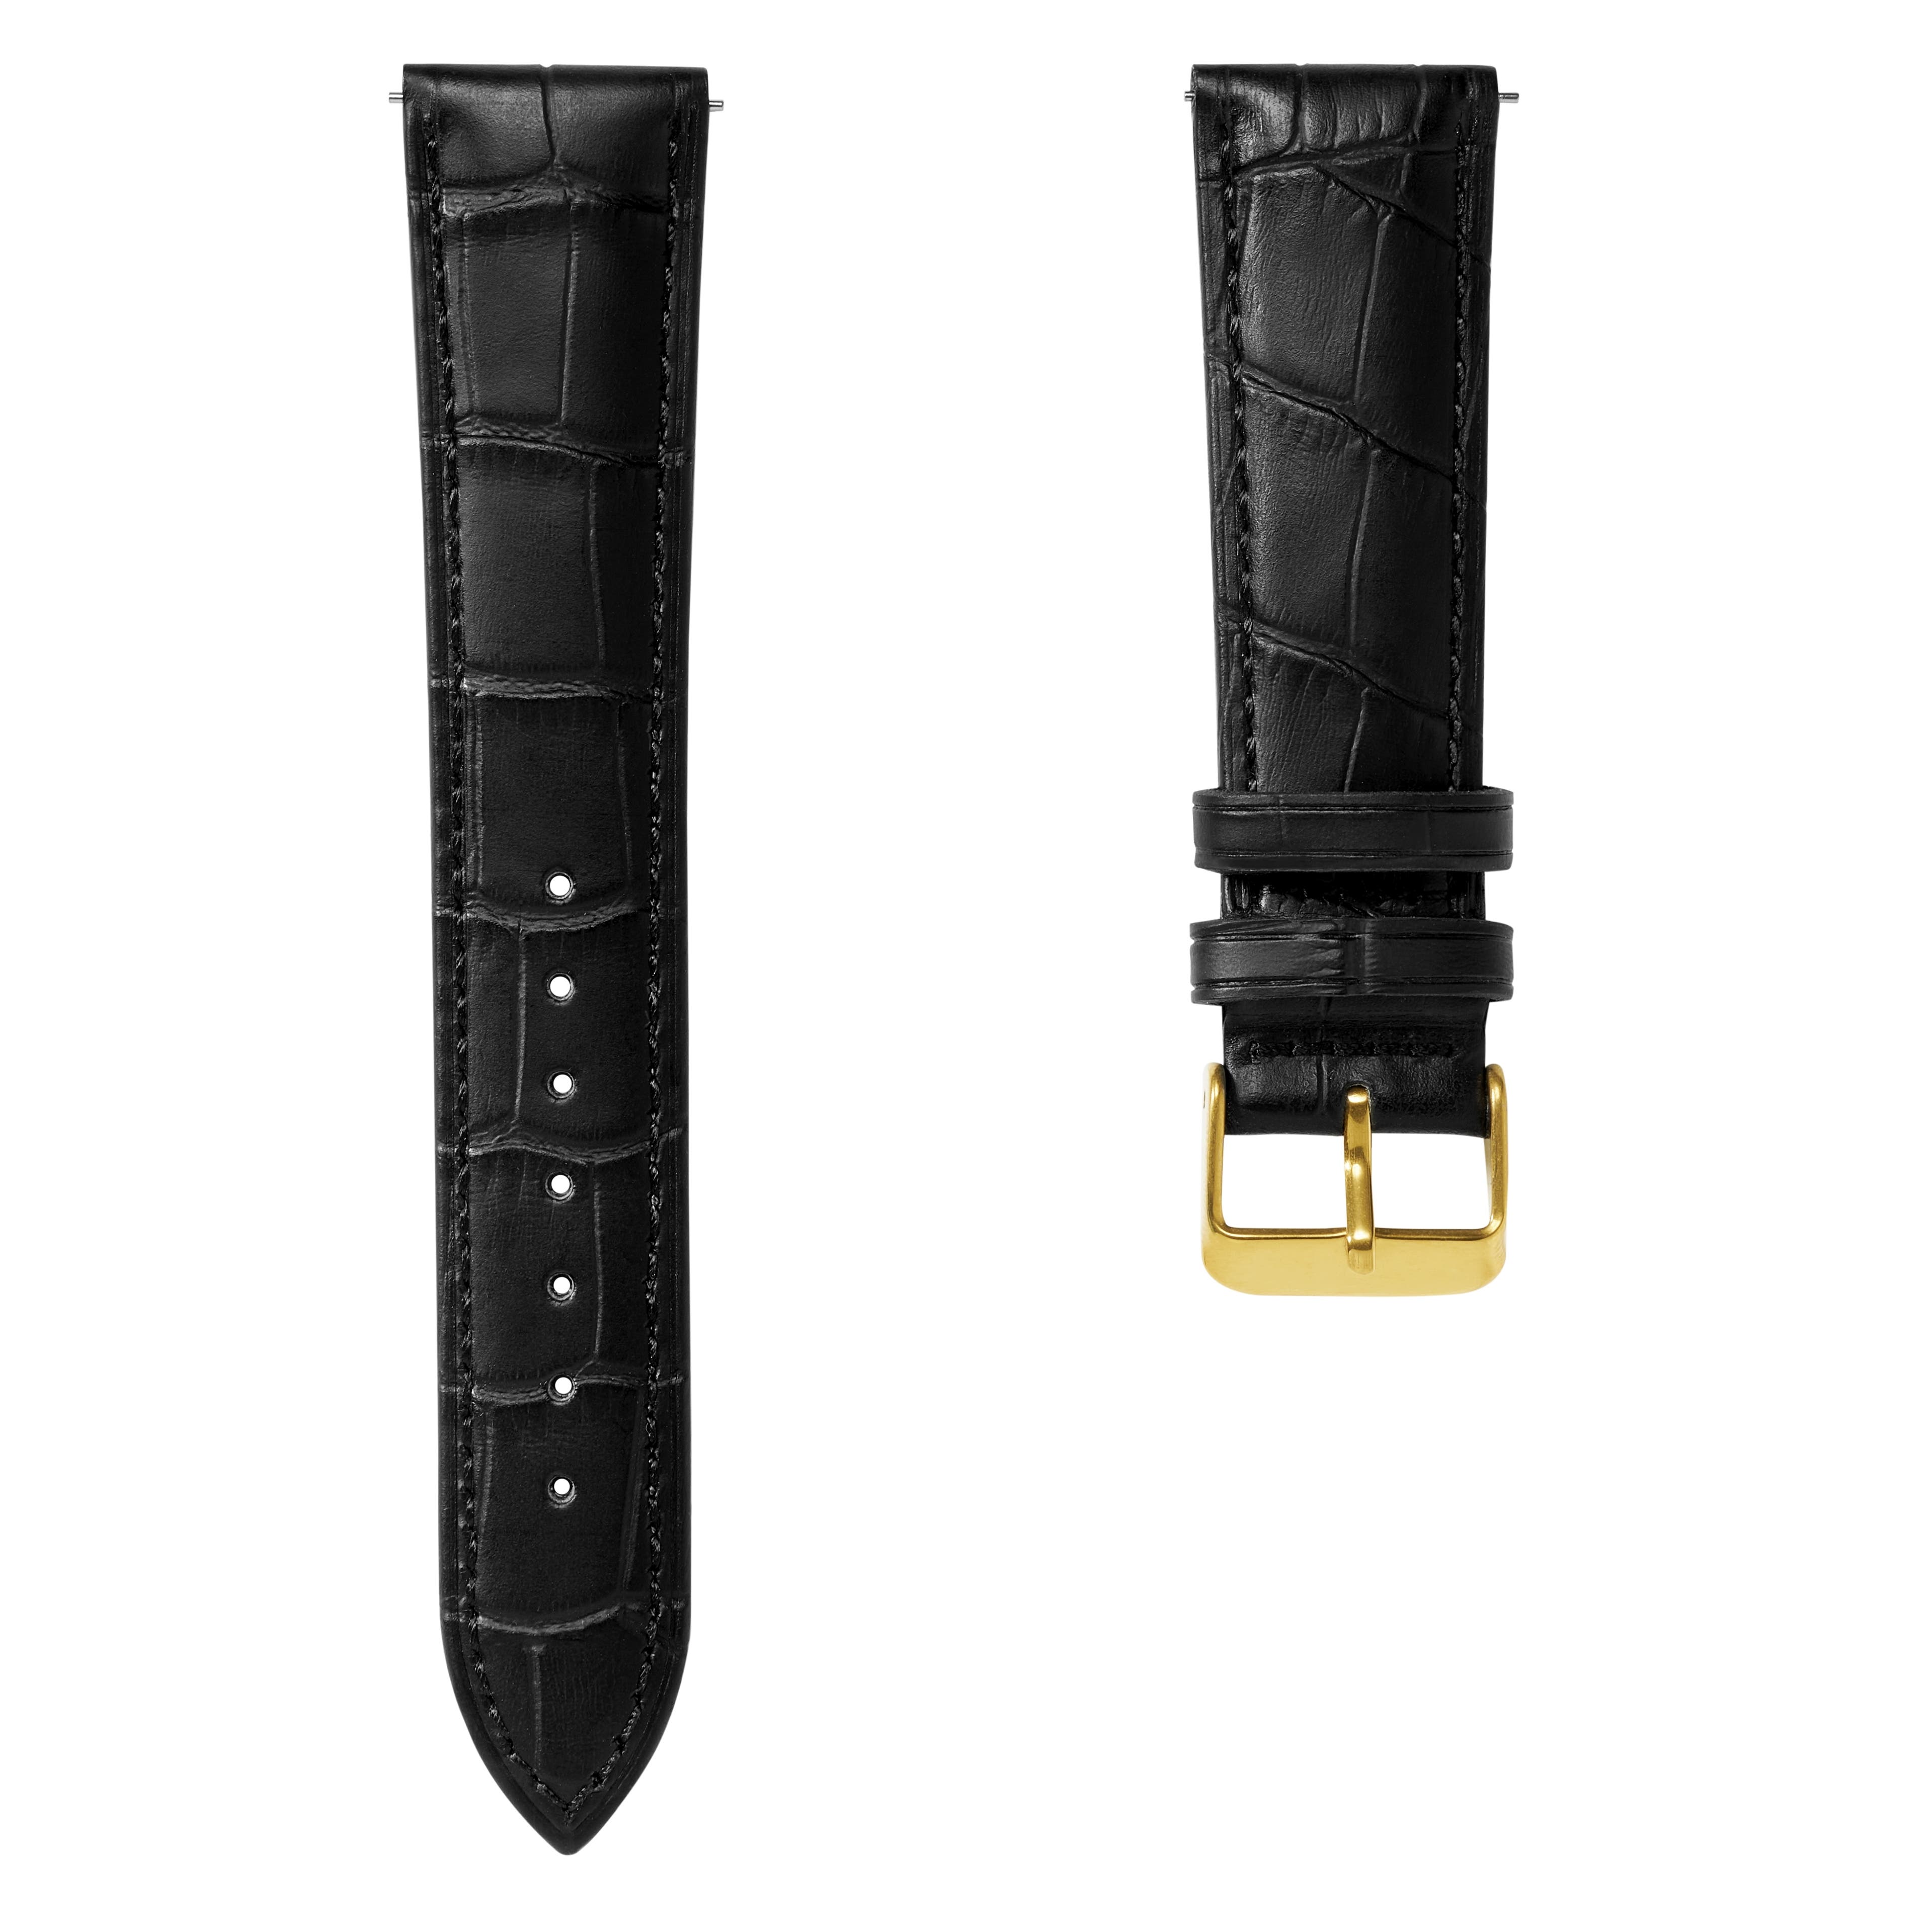 Correa de reloj de cuero negro con relieve de cocodrilo y hebilla dorada de 22 mm - Liberación rápida